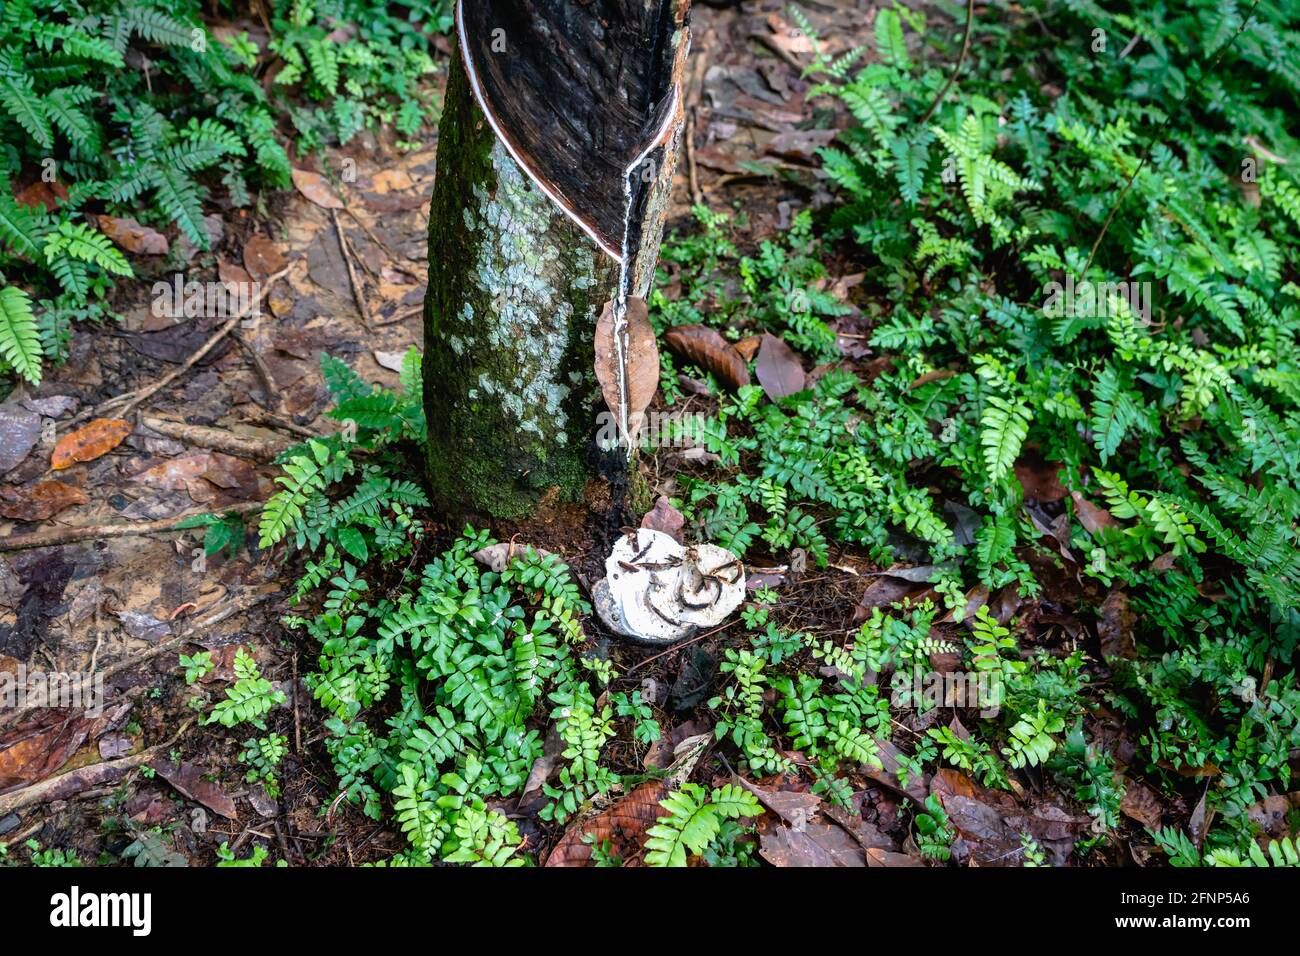 Kautschukbaumplantage, Kautschukklopfen aus der para-Kautschukbaumplanze (Hevea brasiliensis) im Regenwald Indonesiens. Naturlatex-Rohstoff-Extrakt Stockfoto